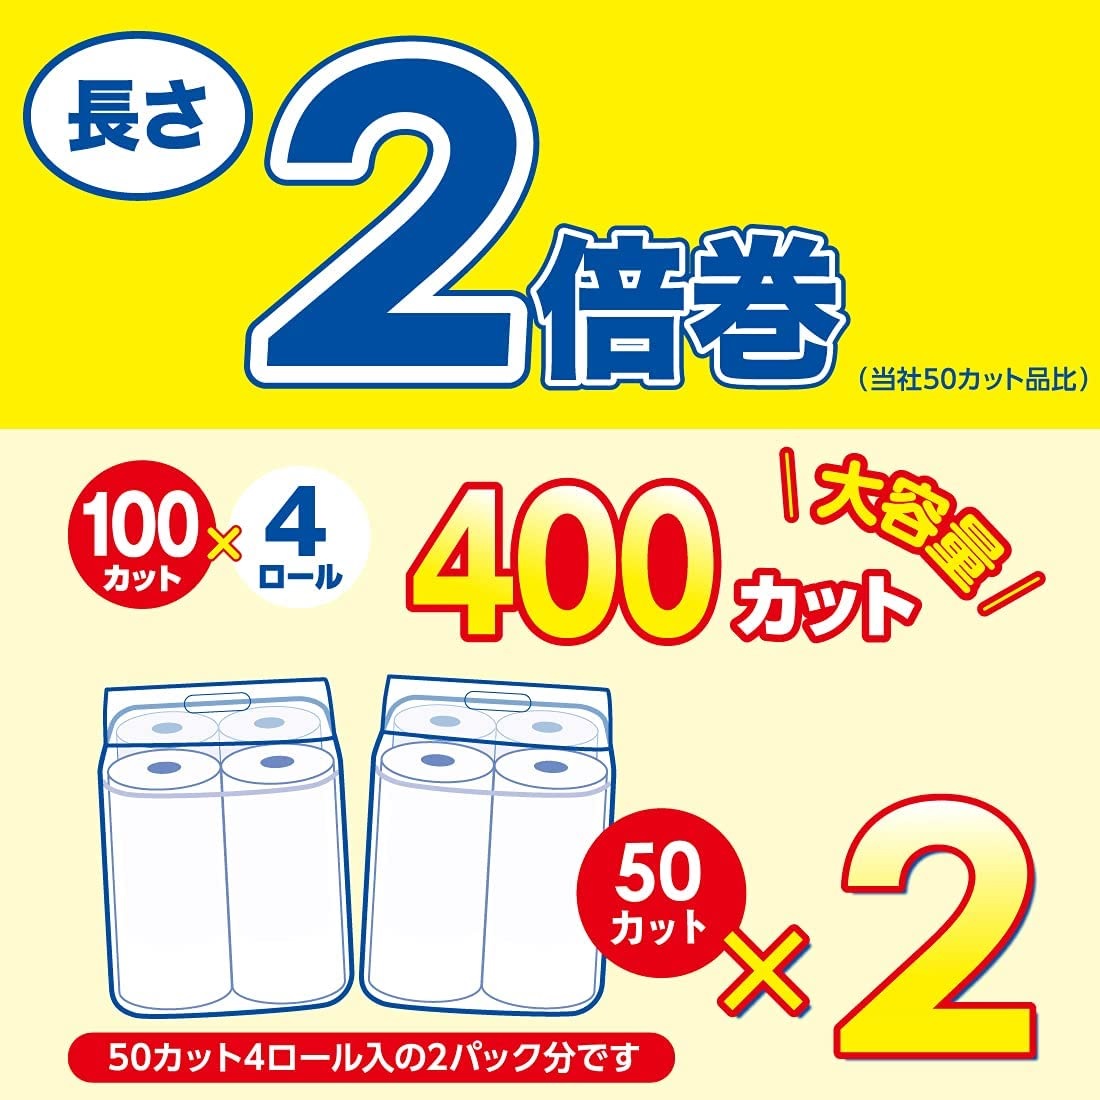 59円 絶品 エリエール 超吸収 キッチンタオル 70カット×2ロール